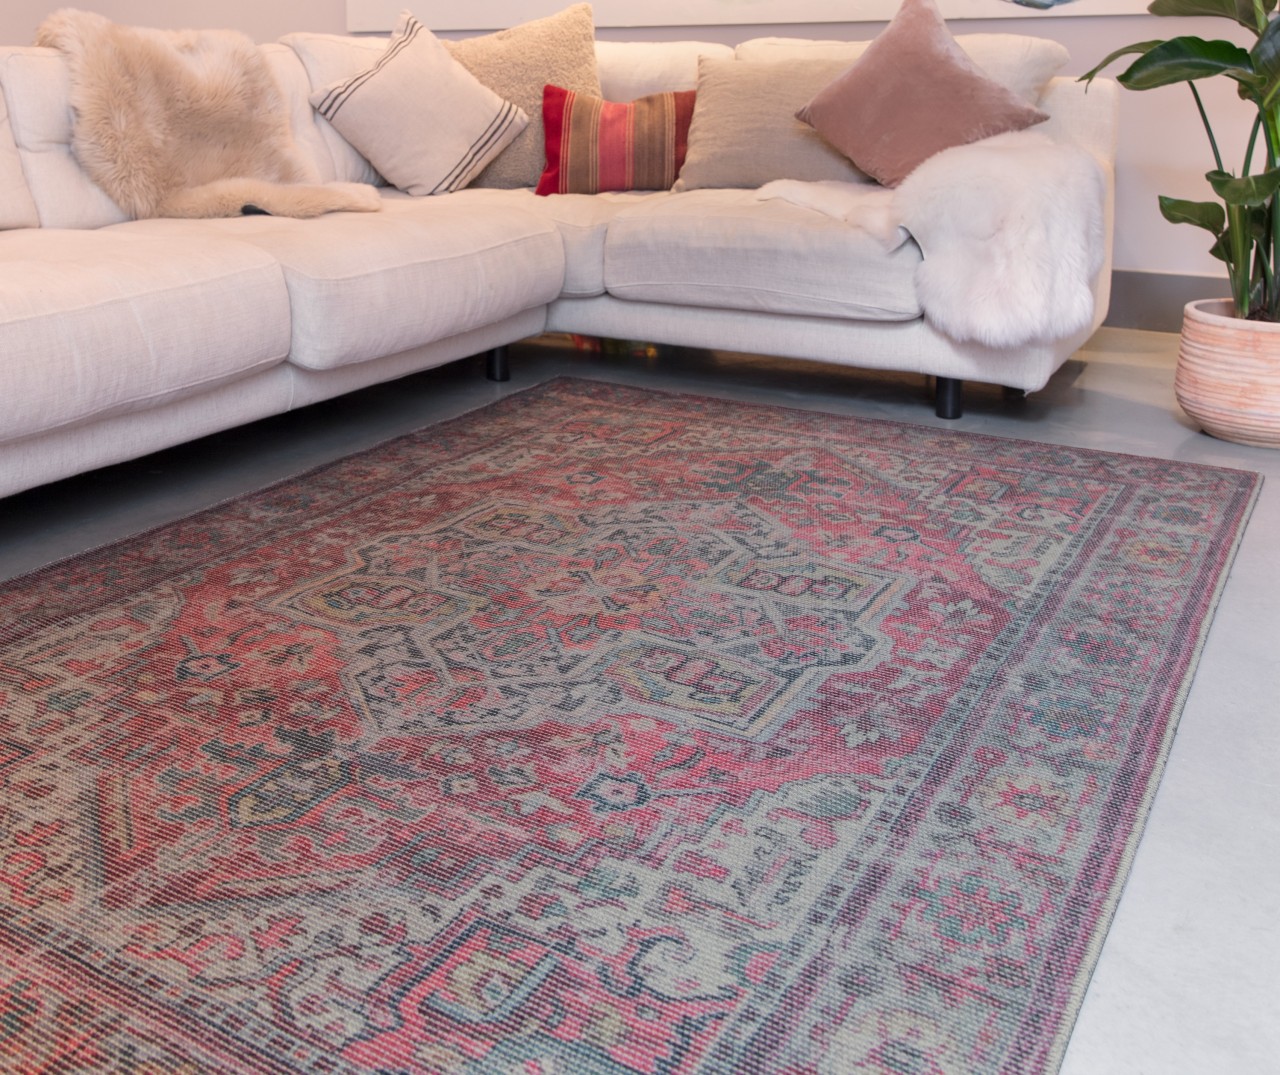 O tapete Kaya Iman é a escolha ideal para dar um toque de elegância e sofisticação a qualquer ambiente, criando um visual único e exclusivo.